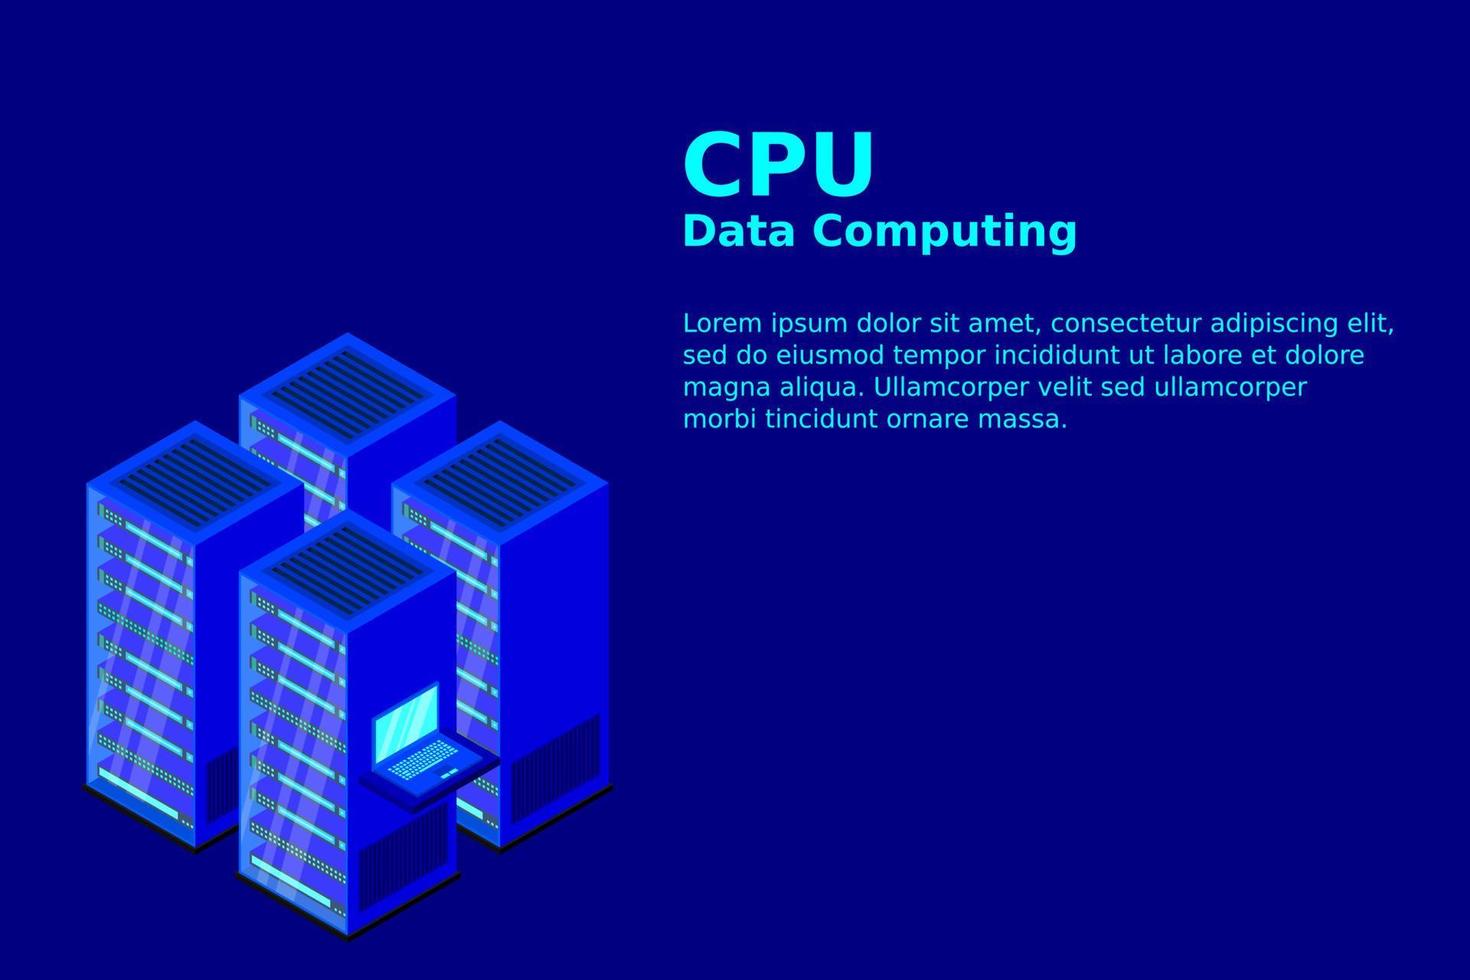 mainframe, server alimentato, concetto di alta tecnologia, data center, archiviazione dati cloud vettore